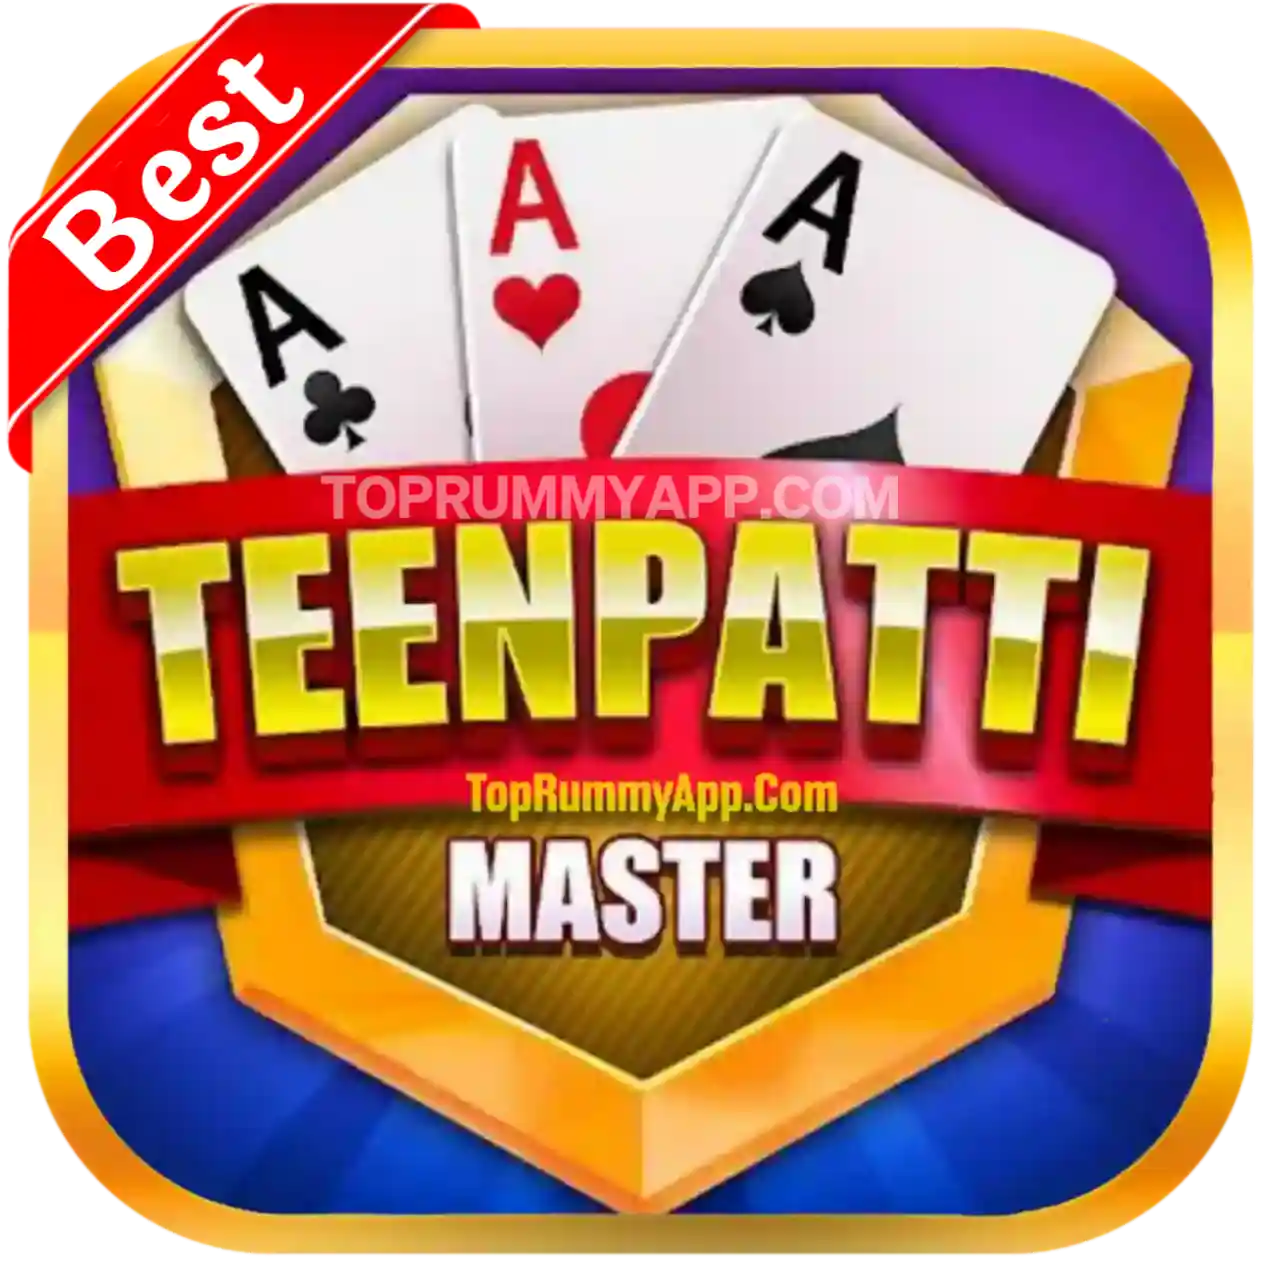 Teen Patti Master Apk Download - All Teen Patti App List 31 Bonus